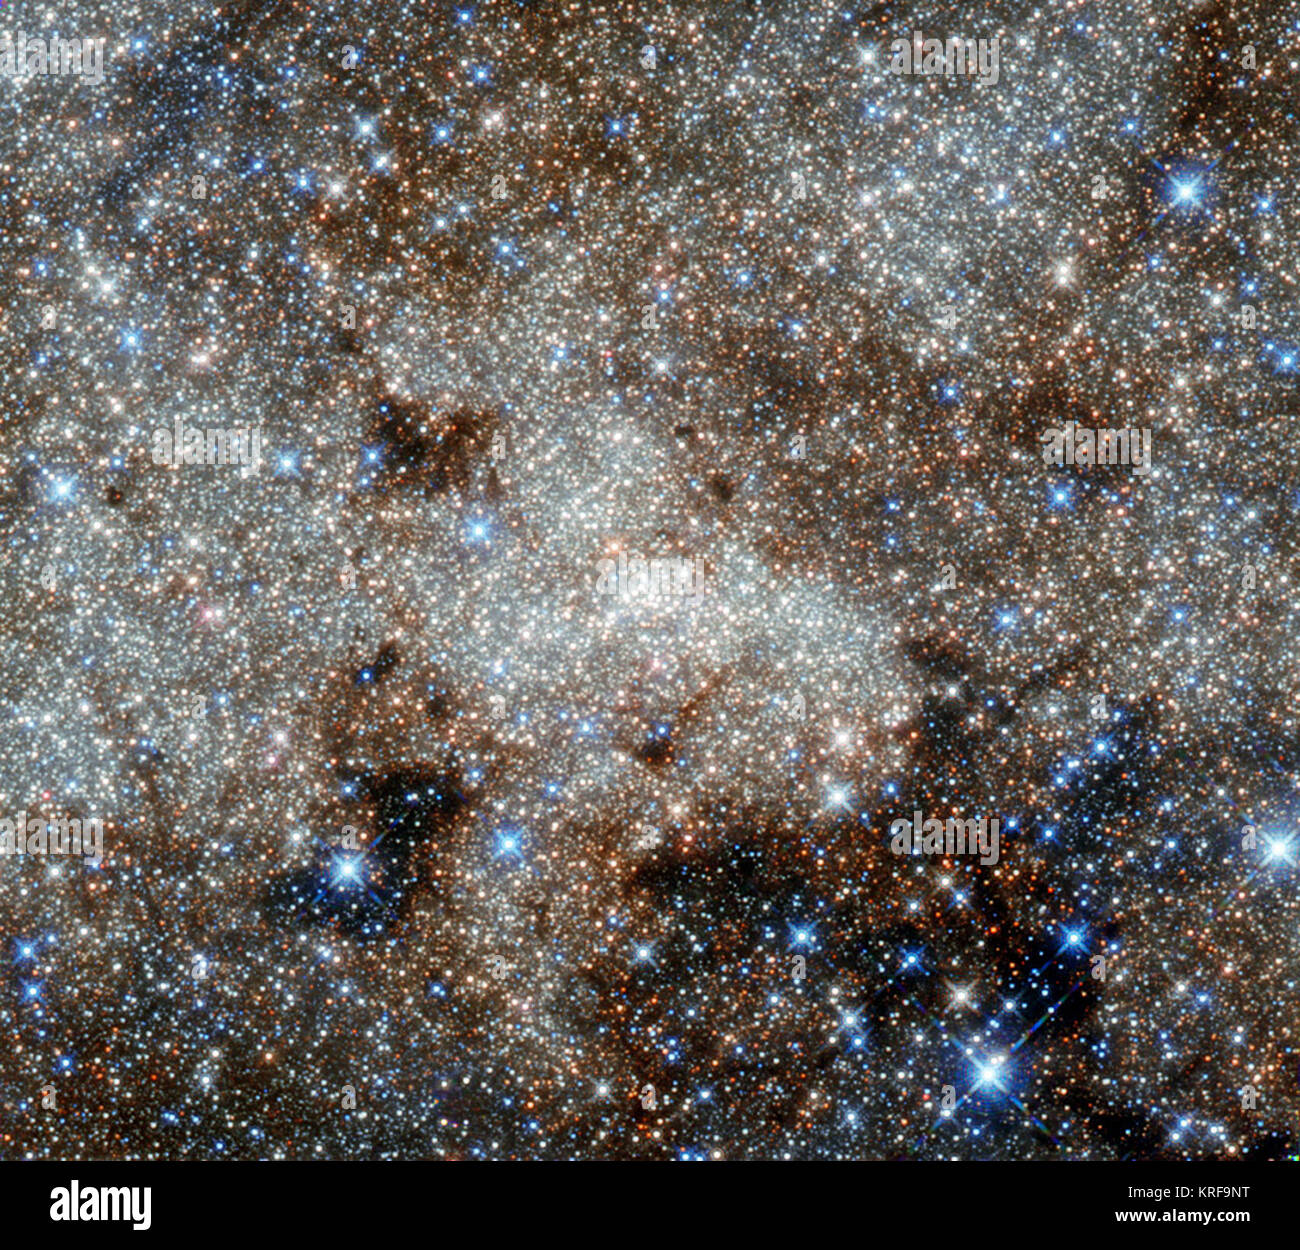 Cette image, à la manière d'une peinture pointilliste, indique le centre de la Voie lactée vers la constellation du Sagittaire. La foule du centre de notre galaxie contient de nombreux objets mystérieux et complexes qui sont habituellement cachées à longueurs d ondes optiques par les nuages de poussière - mais beaucoup sont visibles ici, dans ces observations infrarouges de Hubble. Cependant, le plus célèbre de l'objet cosmique dans cette image reste invisible : le monstre au coeur de notre galaxie appelée Sagittarius A*. Les astronomes ont observé les étoiles tourner autour de ce trou noir supermassif (situé dans le centre de t Banque D'Images